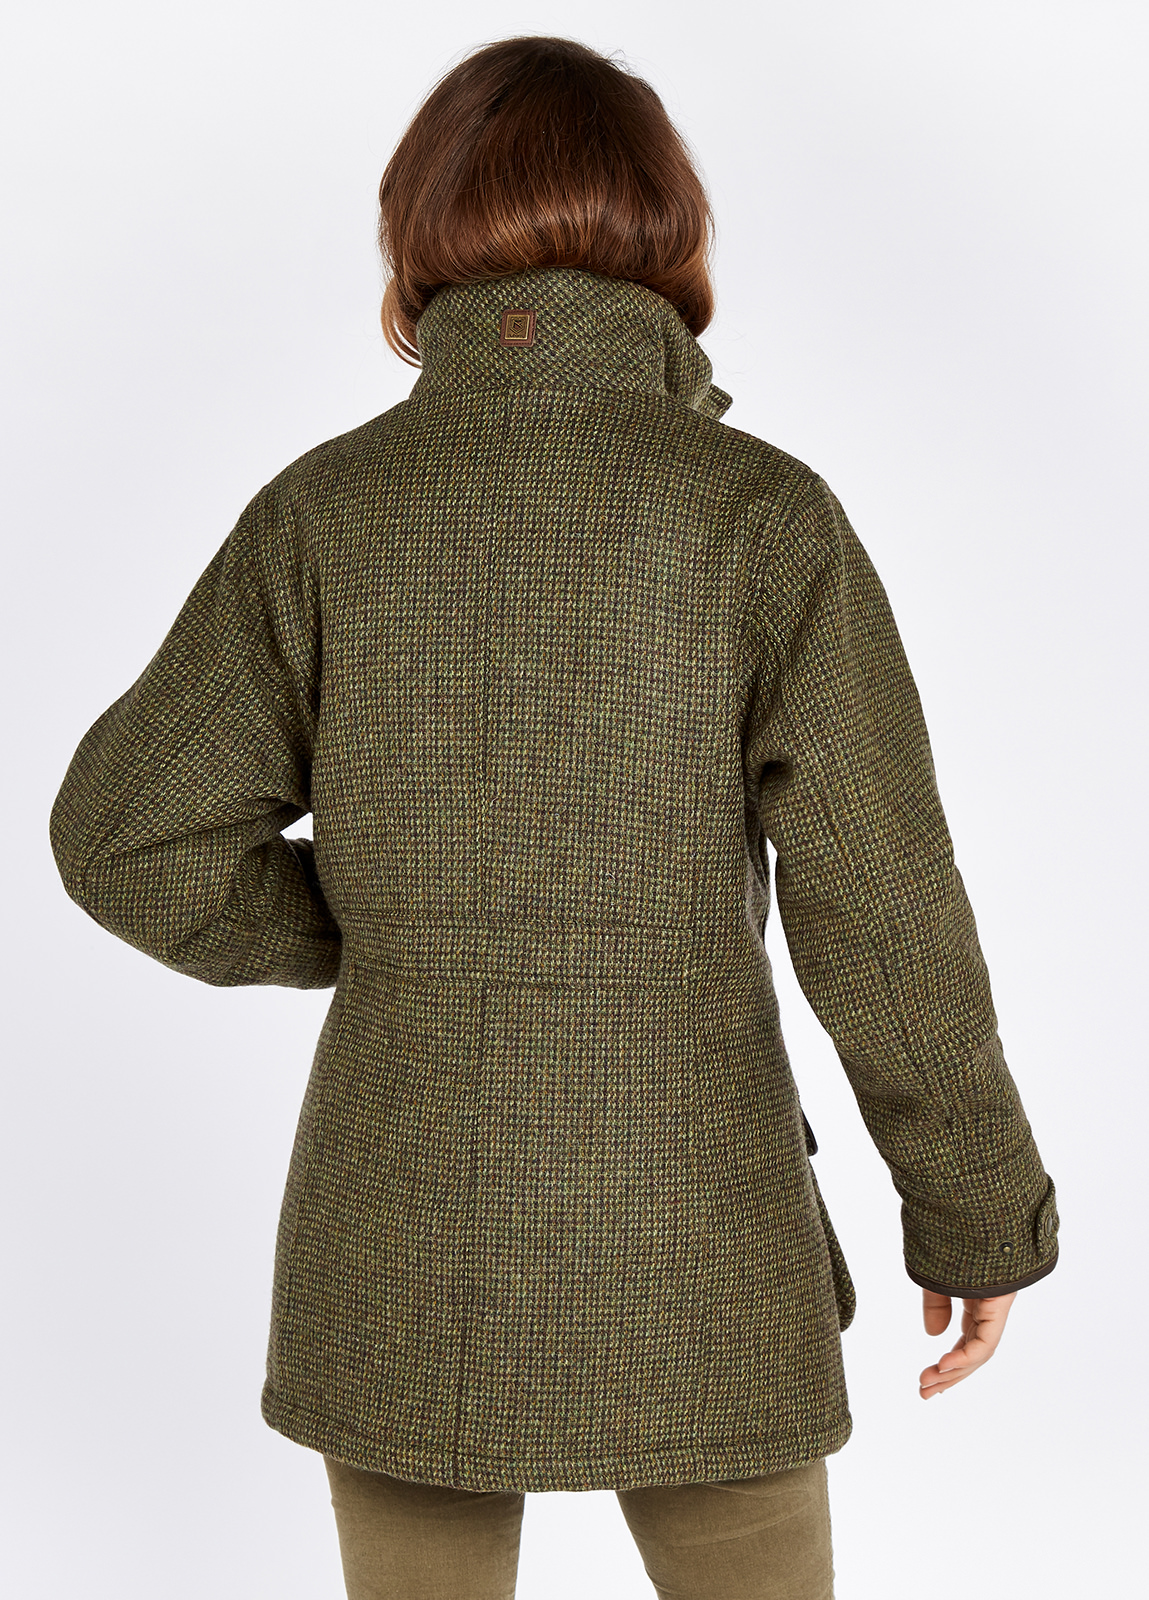 One Tweed Jacket, Two Ways - Wendy's Lookbook